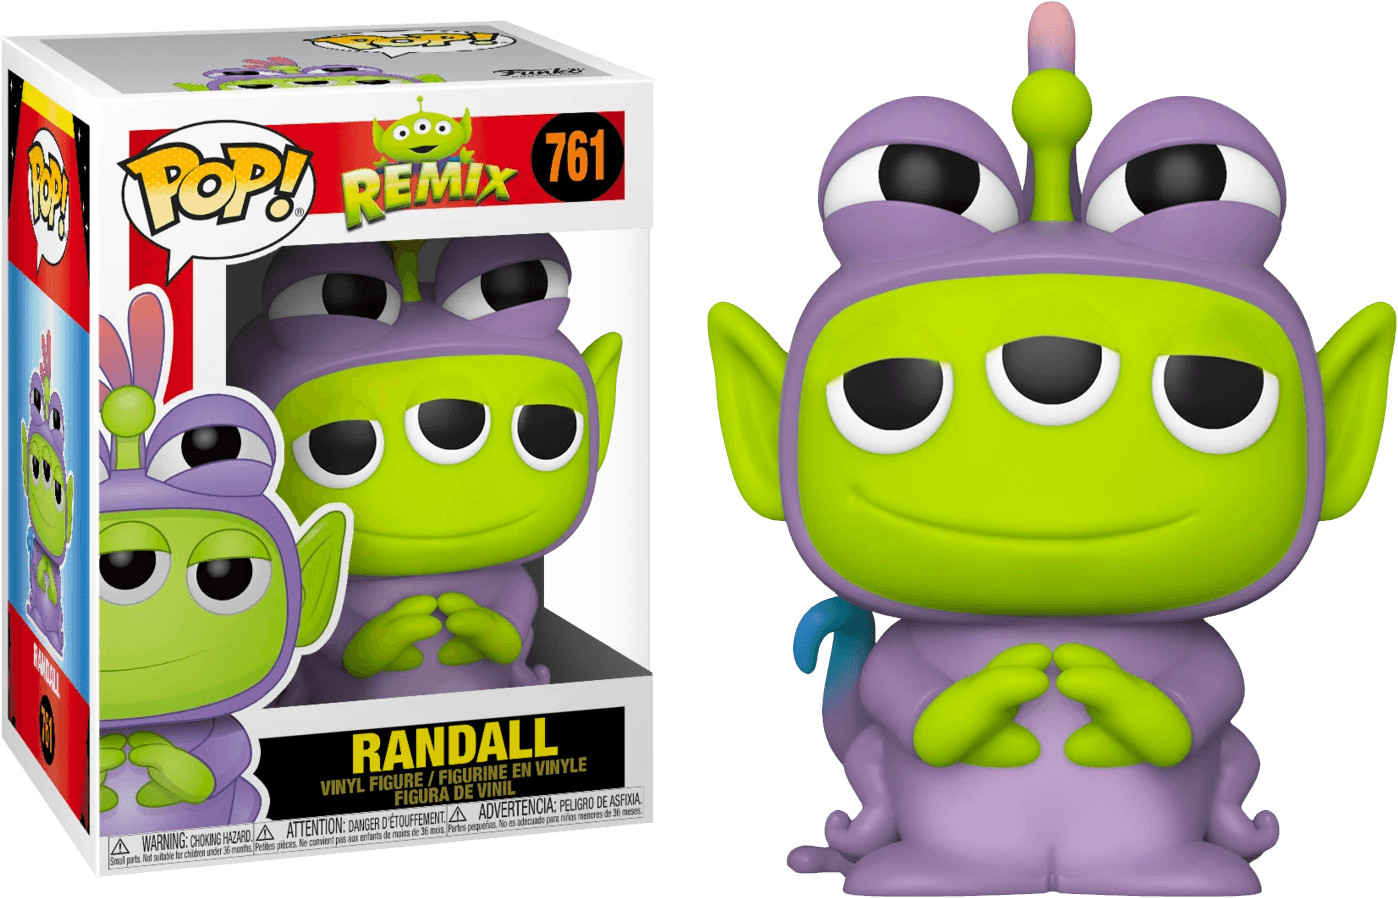 FUN48365 Pixar - Alien Remix Randall Pop! Vinyl - Funko - Titan Pop Culture